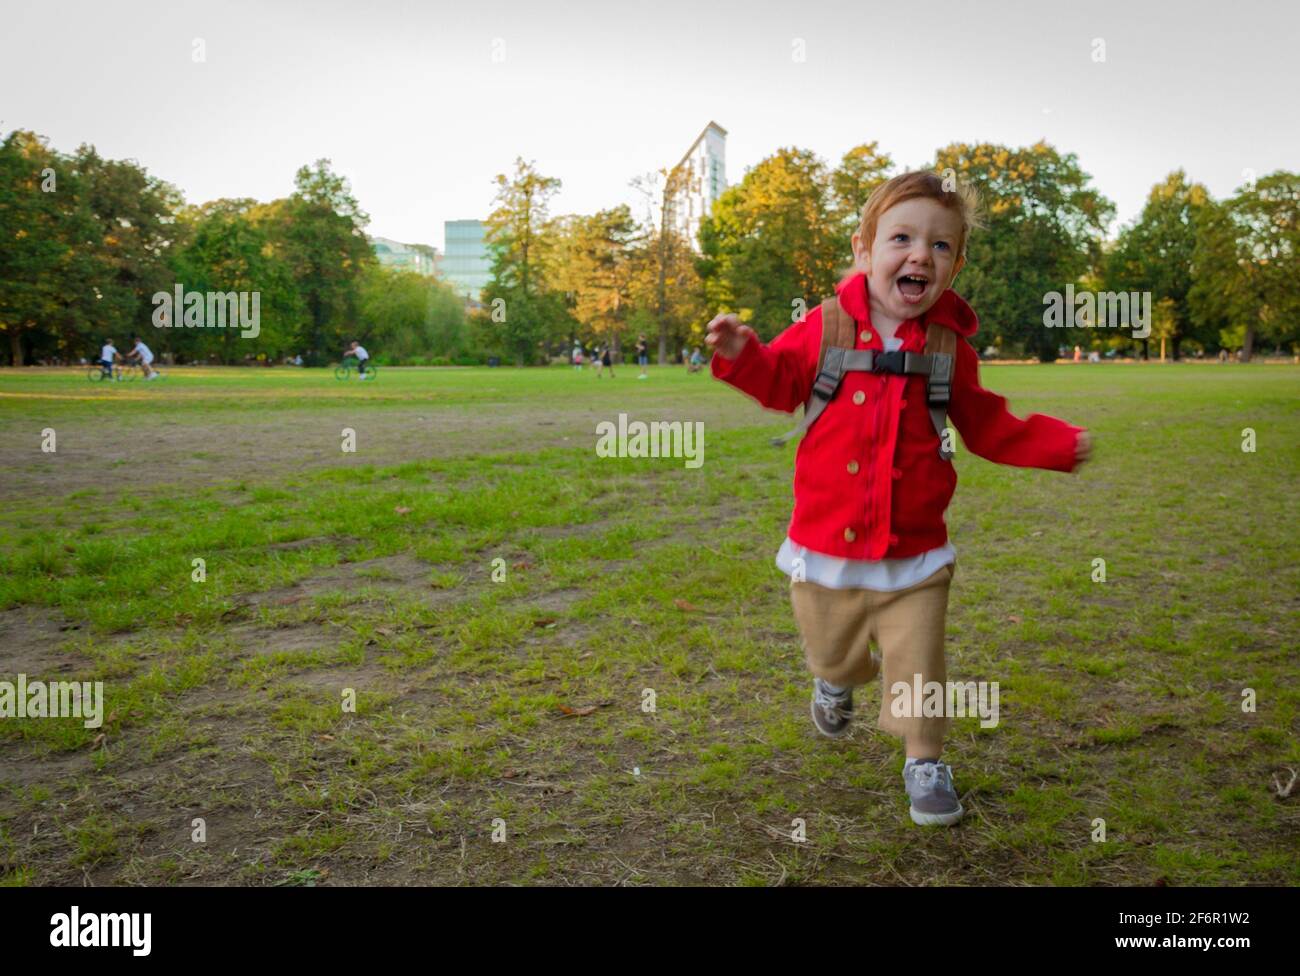 Un lindo, pelirrojo, niño con una chaqueta roja corriendo en un césped en un parque en una noche soleada Foto de stock